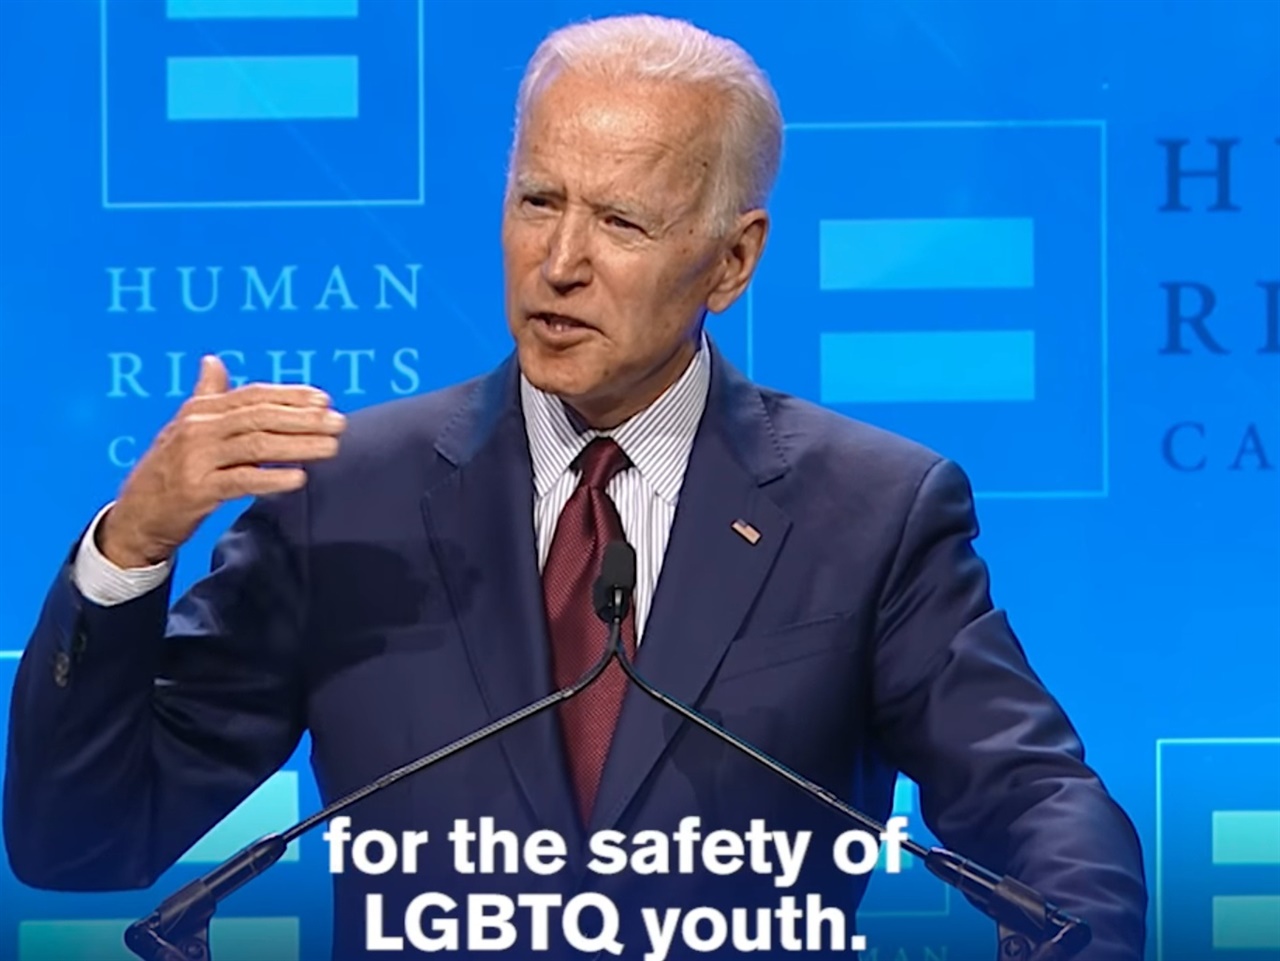 조 바이든 미국 대통령은 2019년 6월, 미국 최대의 성소수자 단체인 인권 캠페인(Human Rights Campaign, HRC)이 주최한 만찬에서 성소수자 청소년의 안전에 관해 연설했다.